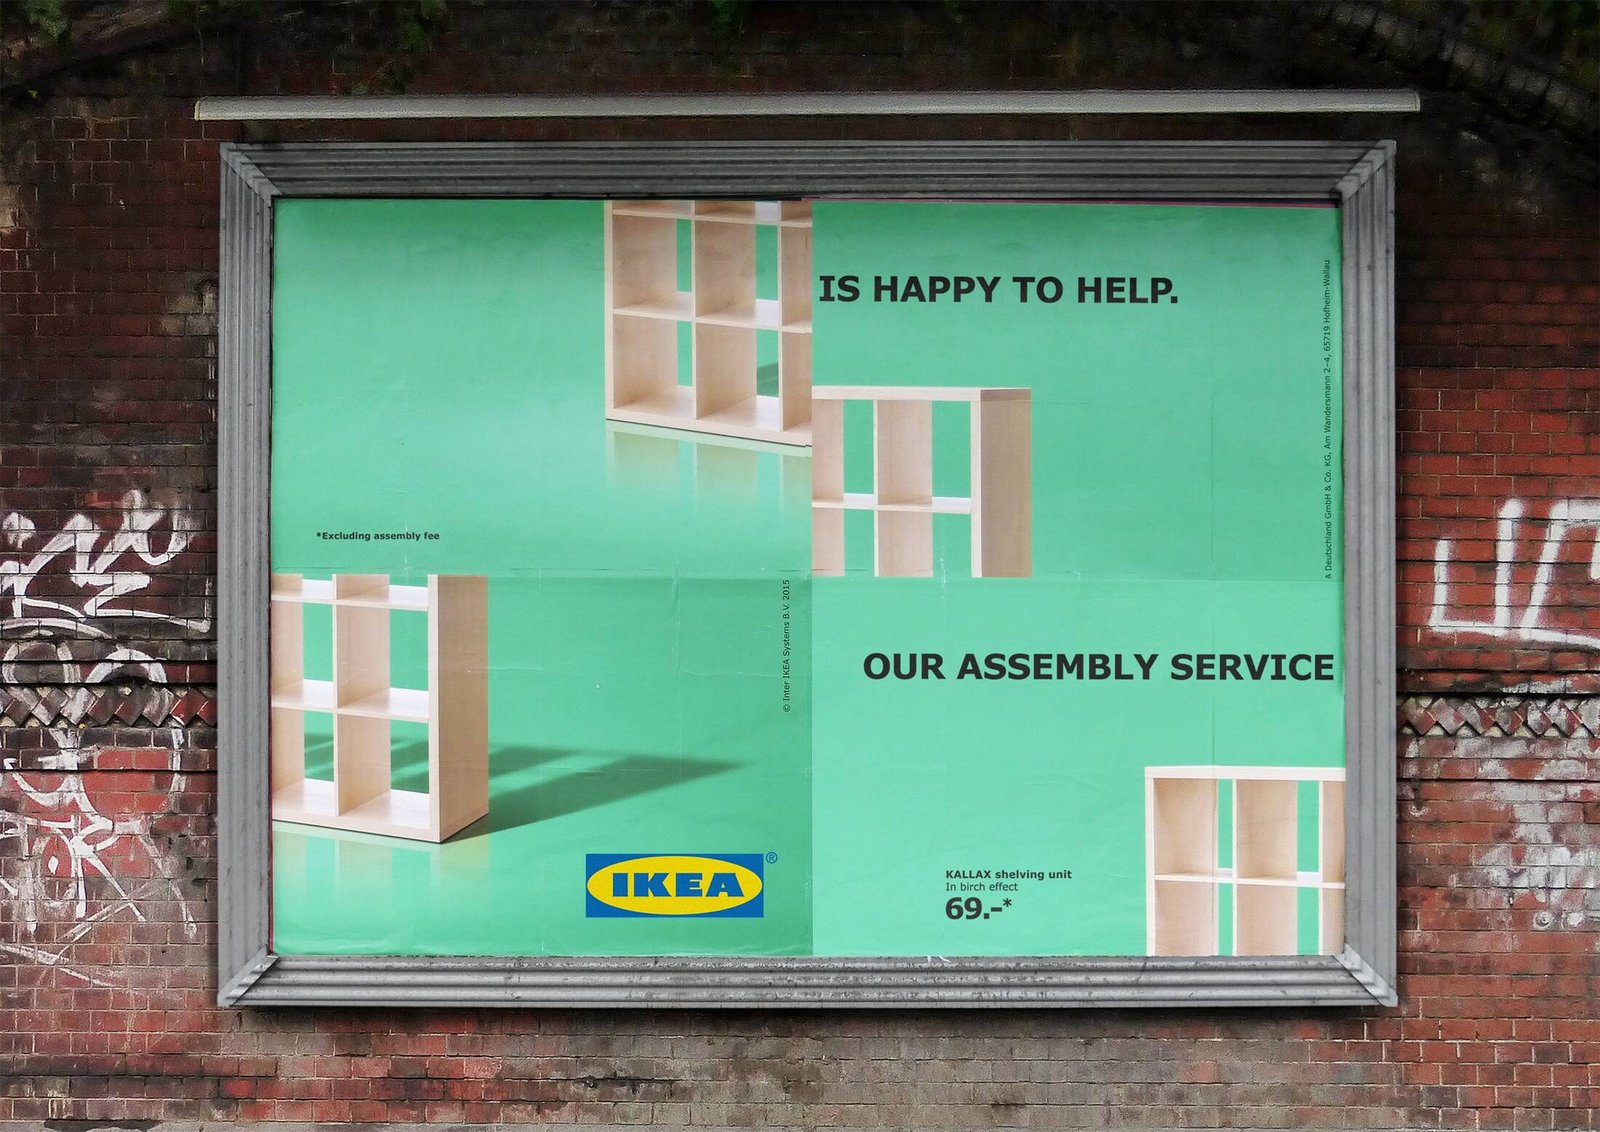 Ikea anuncio 01